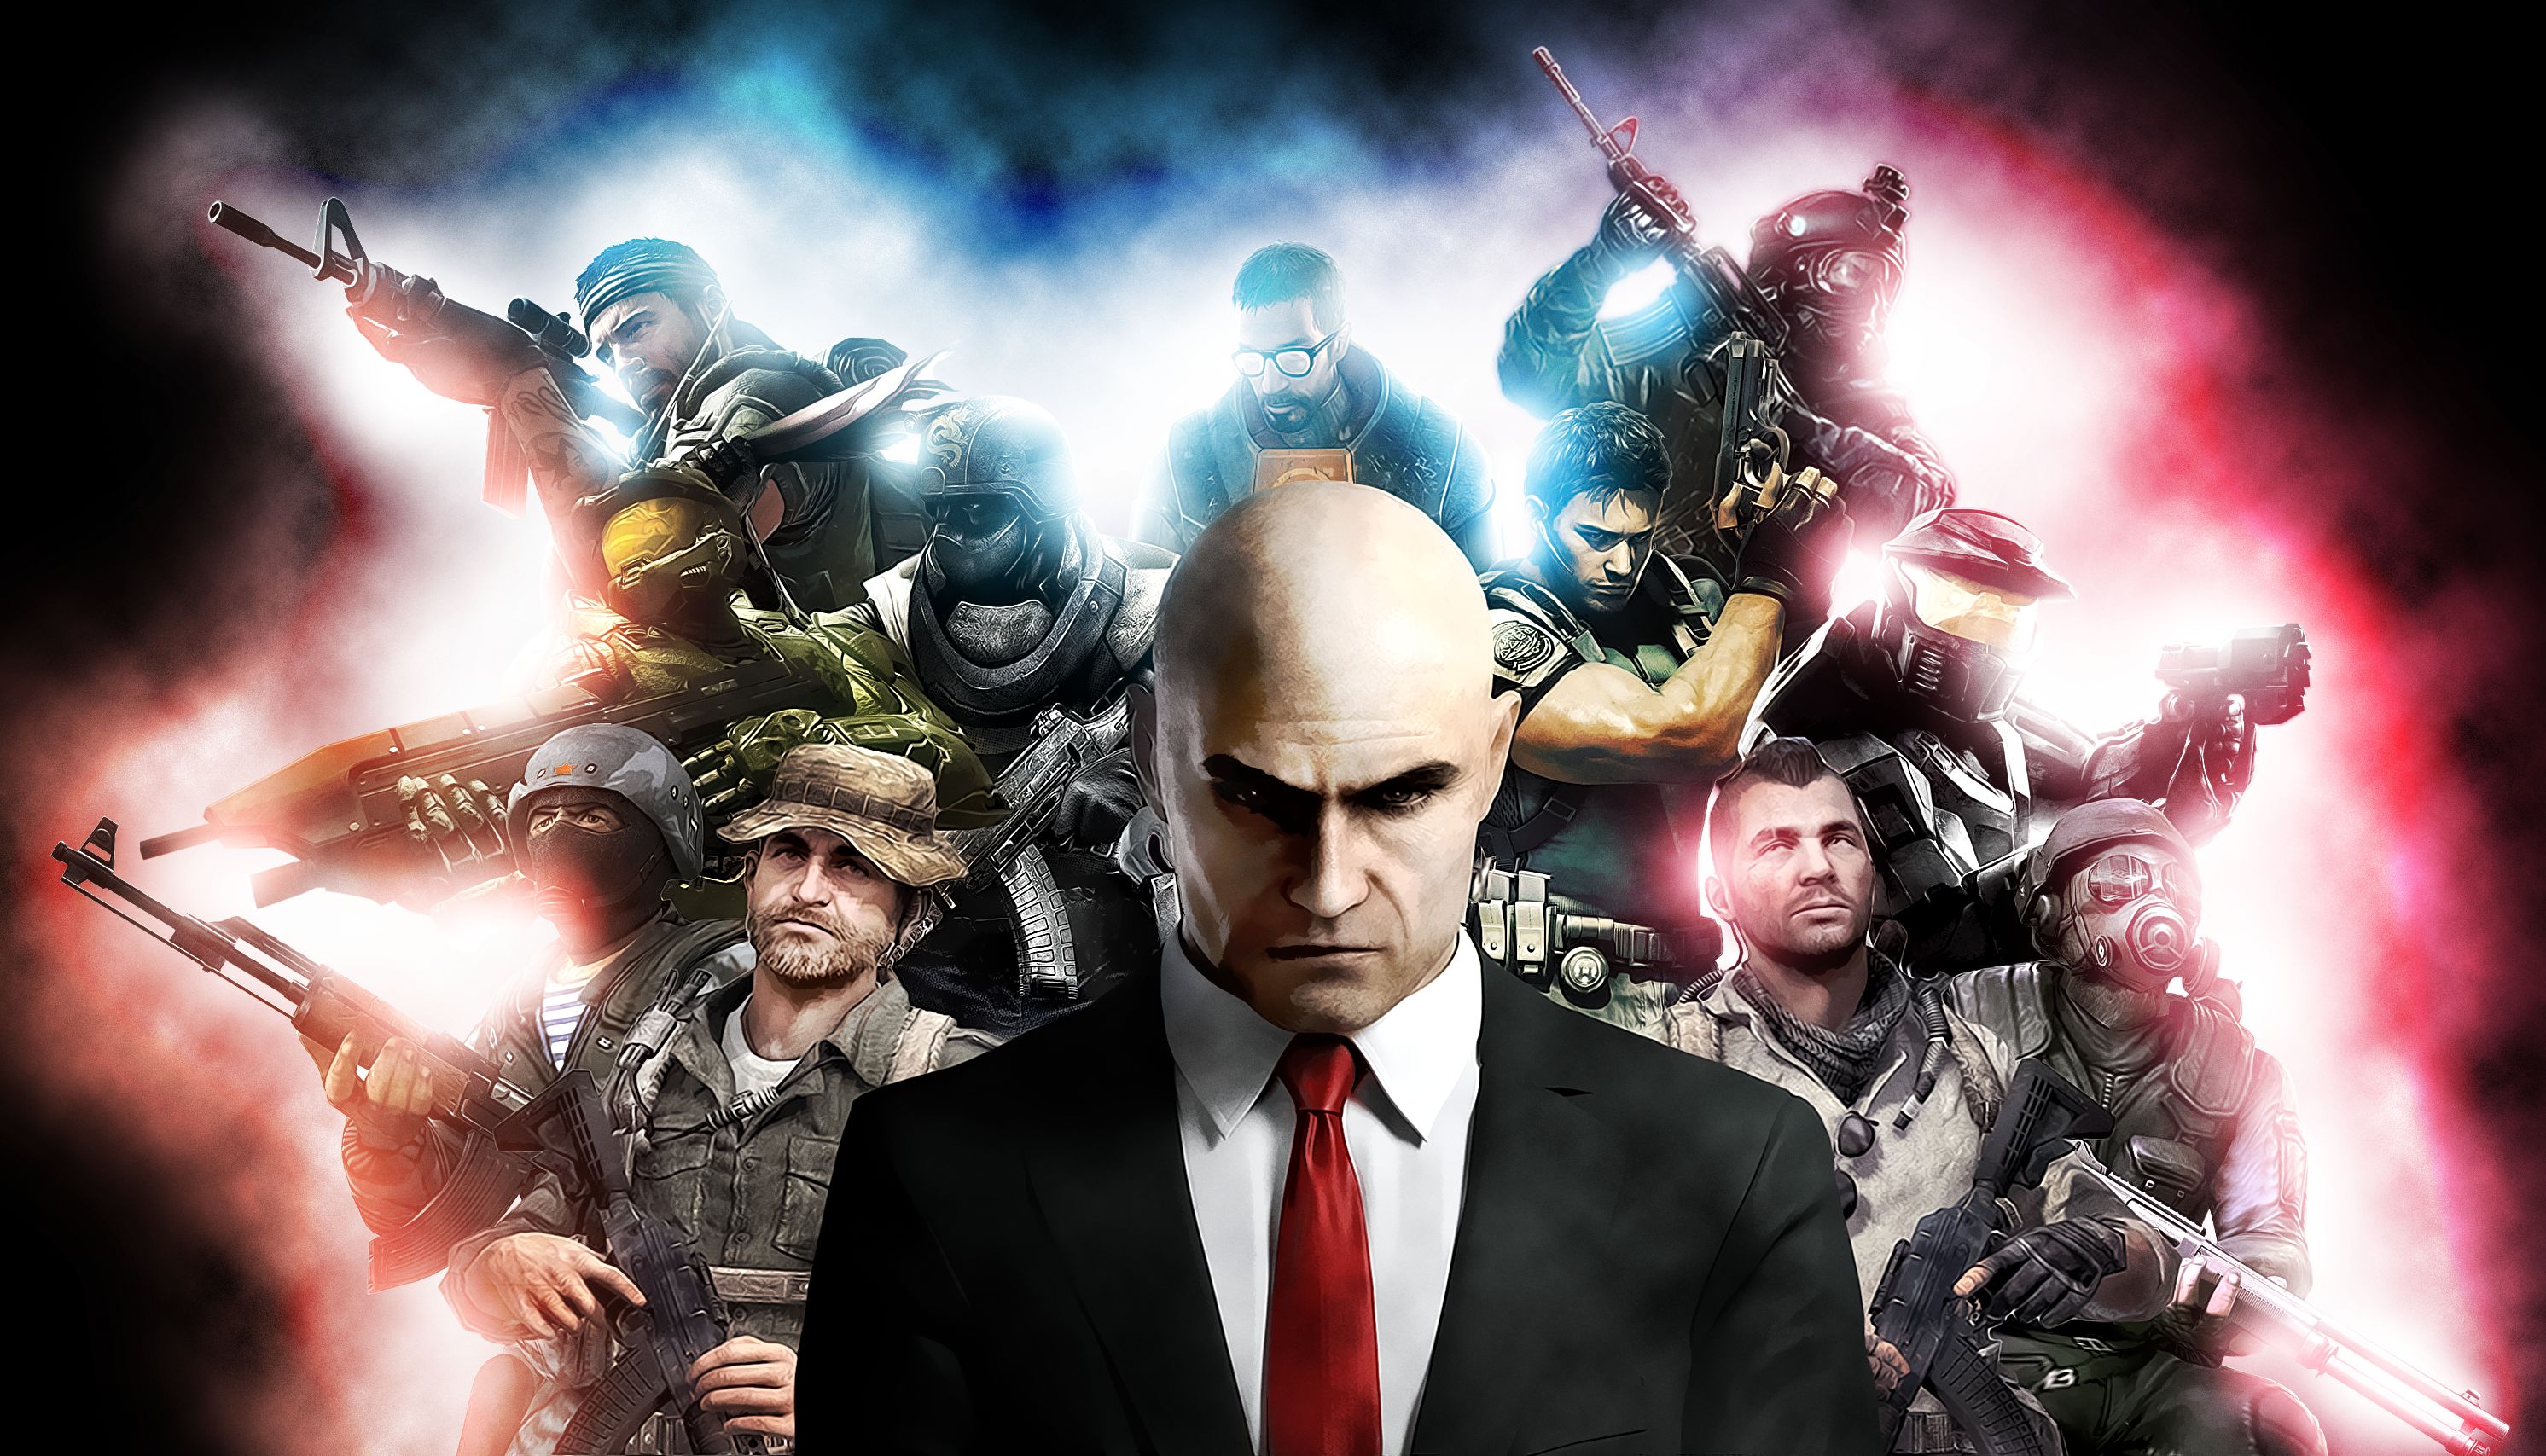 Descargar fondos de escritorio de Call Of Duty 4 Guerra Moderna HD